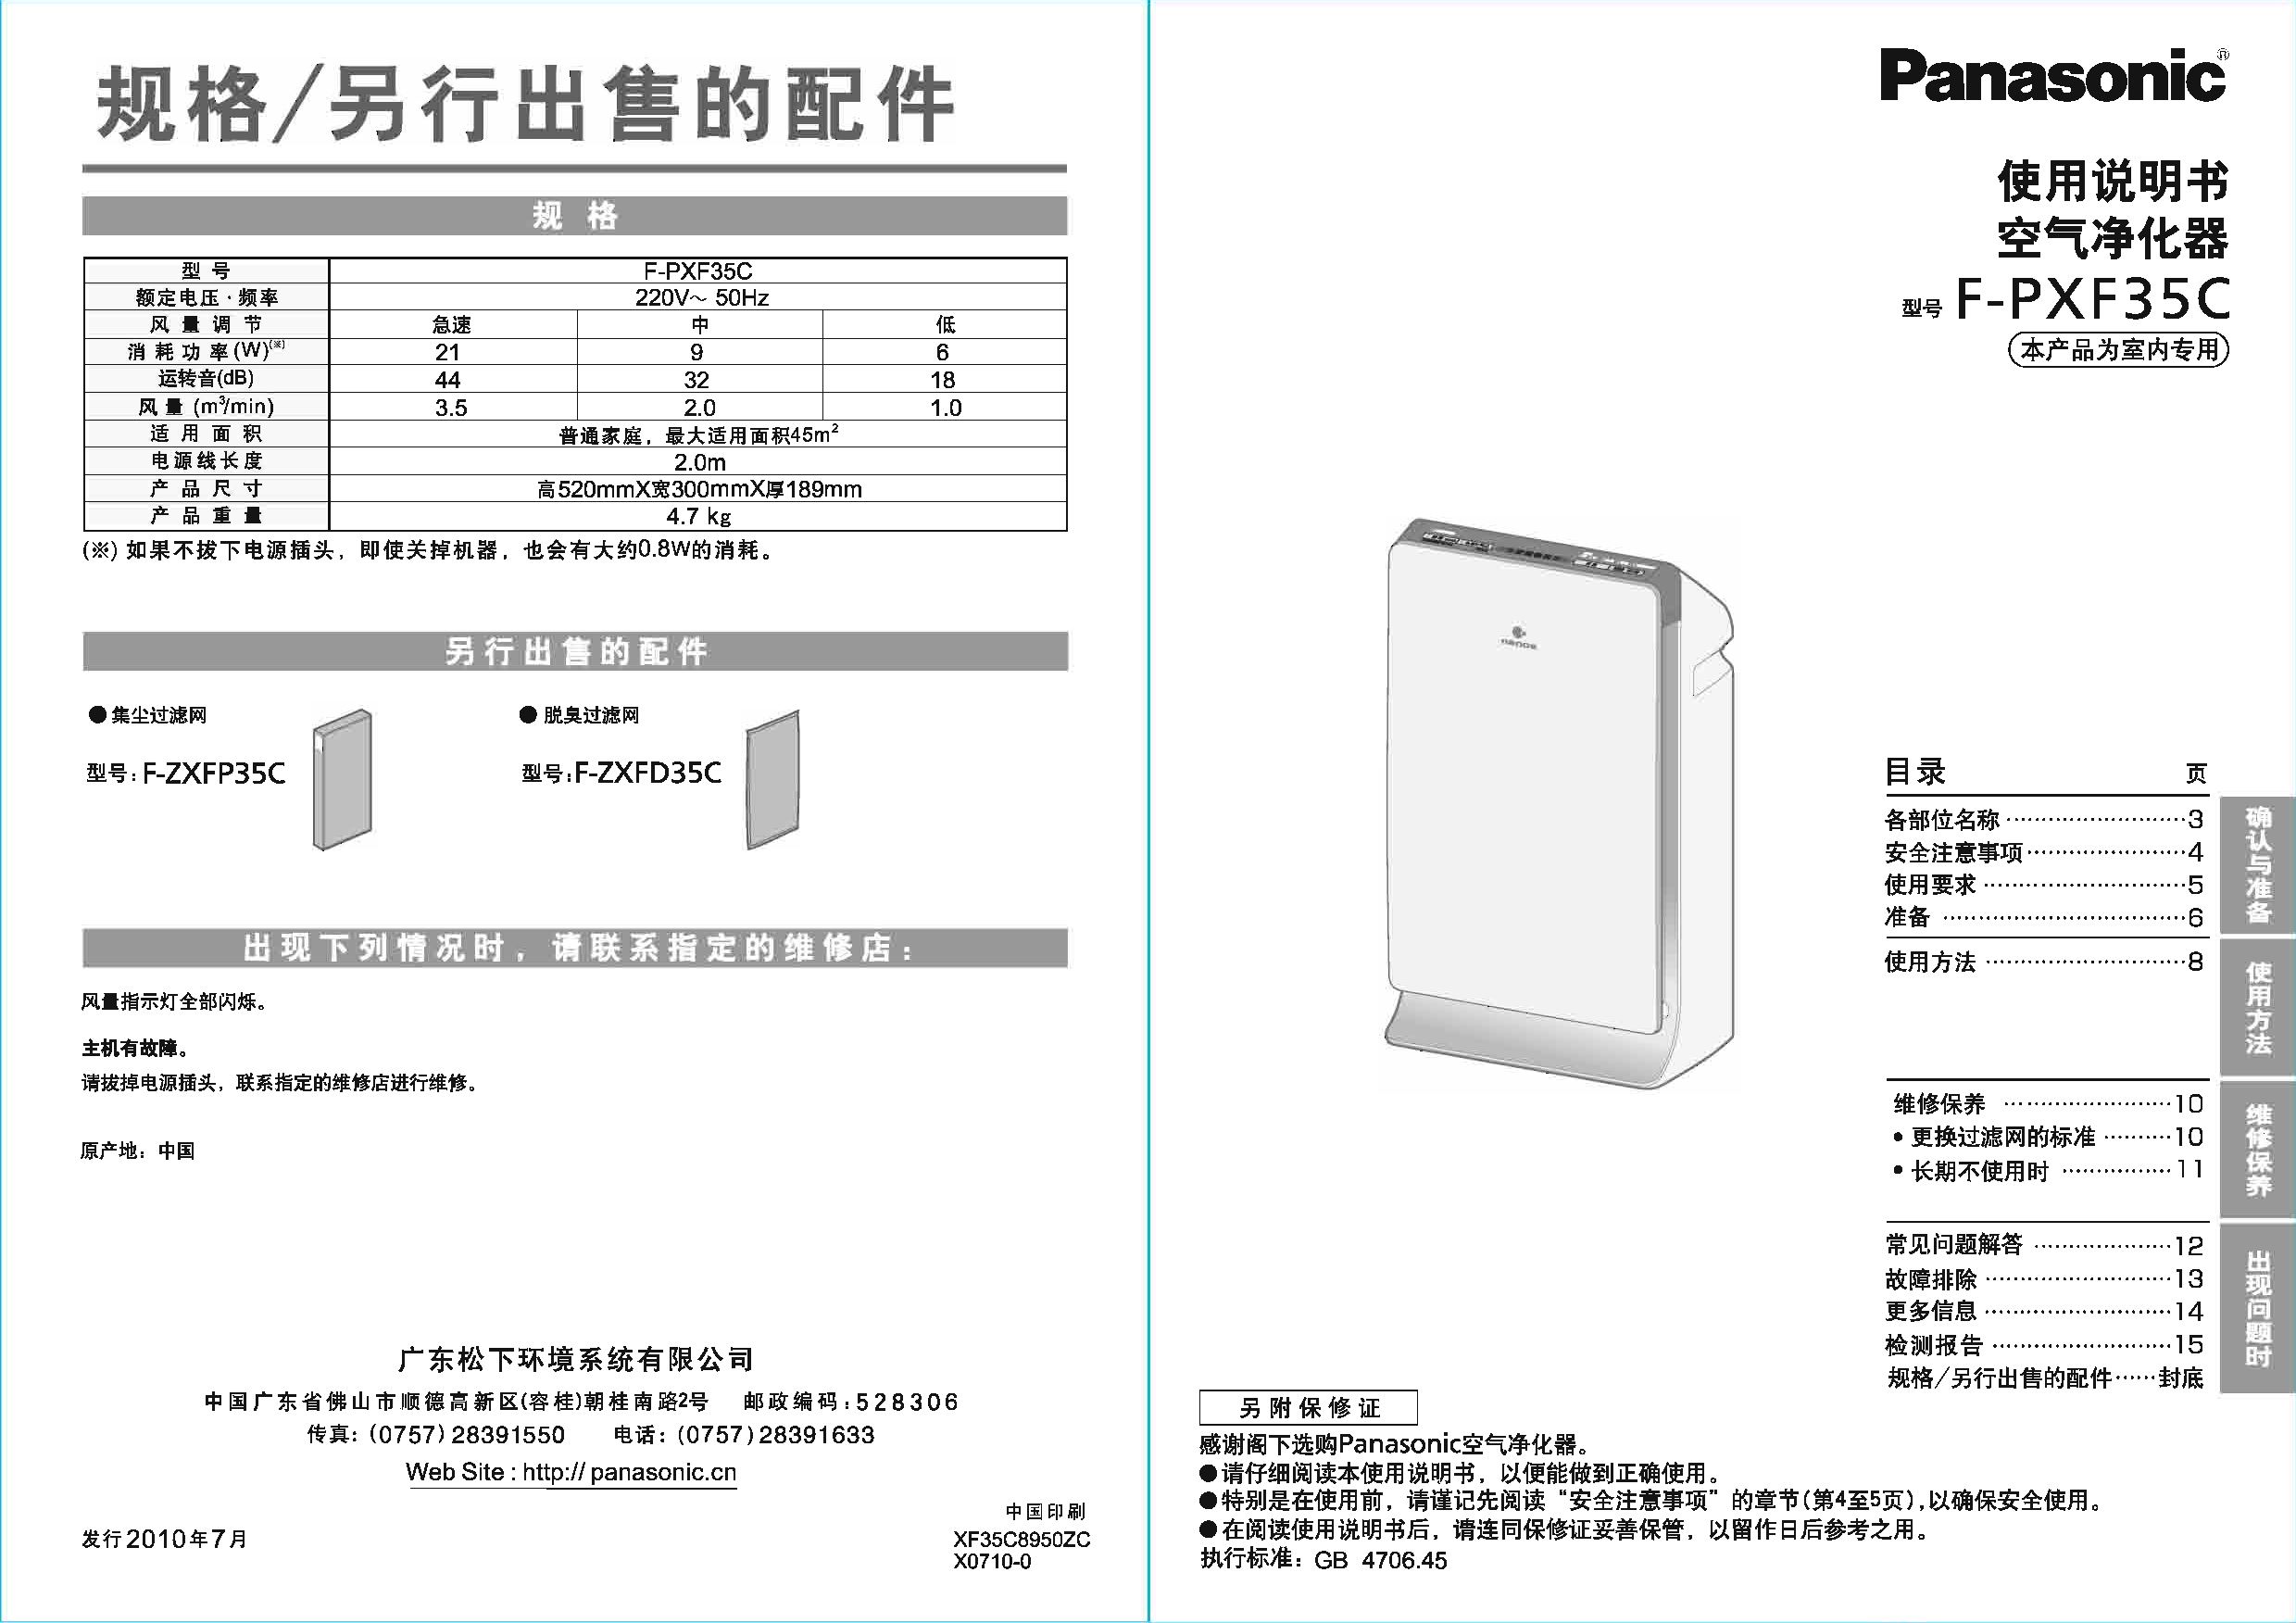 松下 Panasonic F-PXF35C 说明书 封面